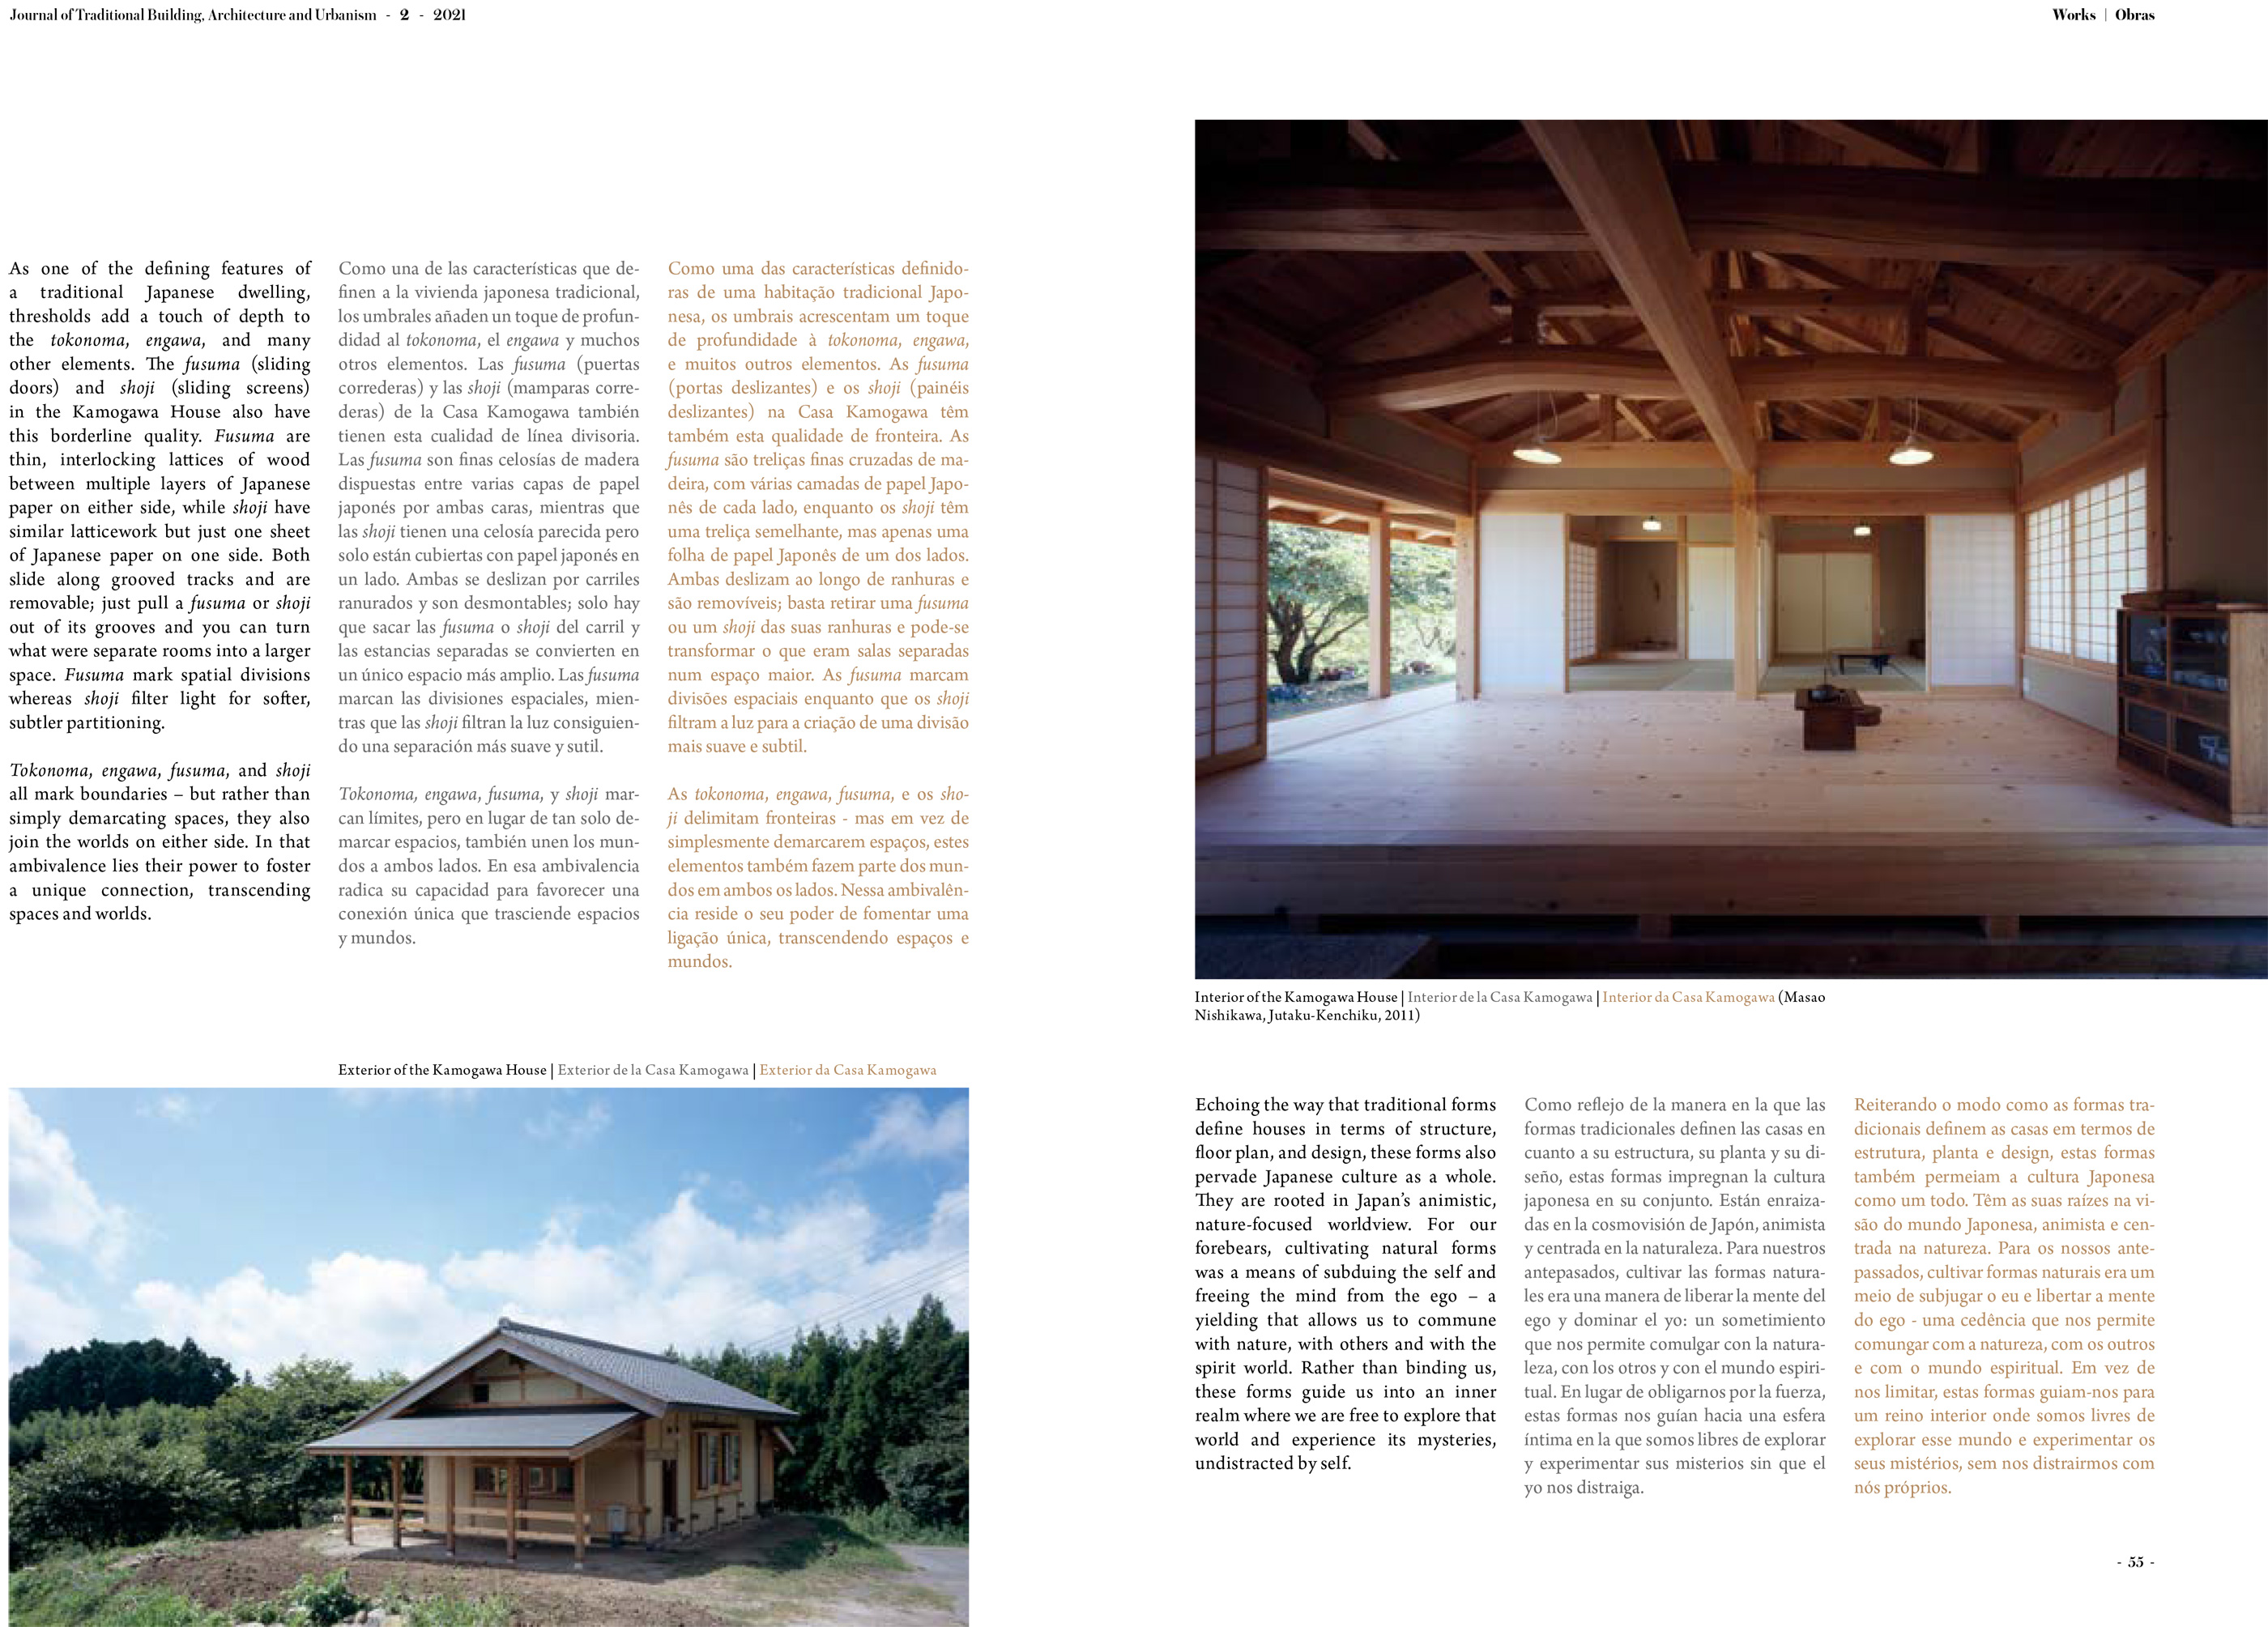 惺々舎 深田真論文 Journal of Traditional Building, Architecture and Urbanism